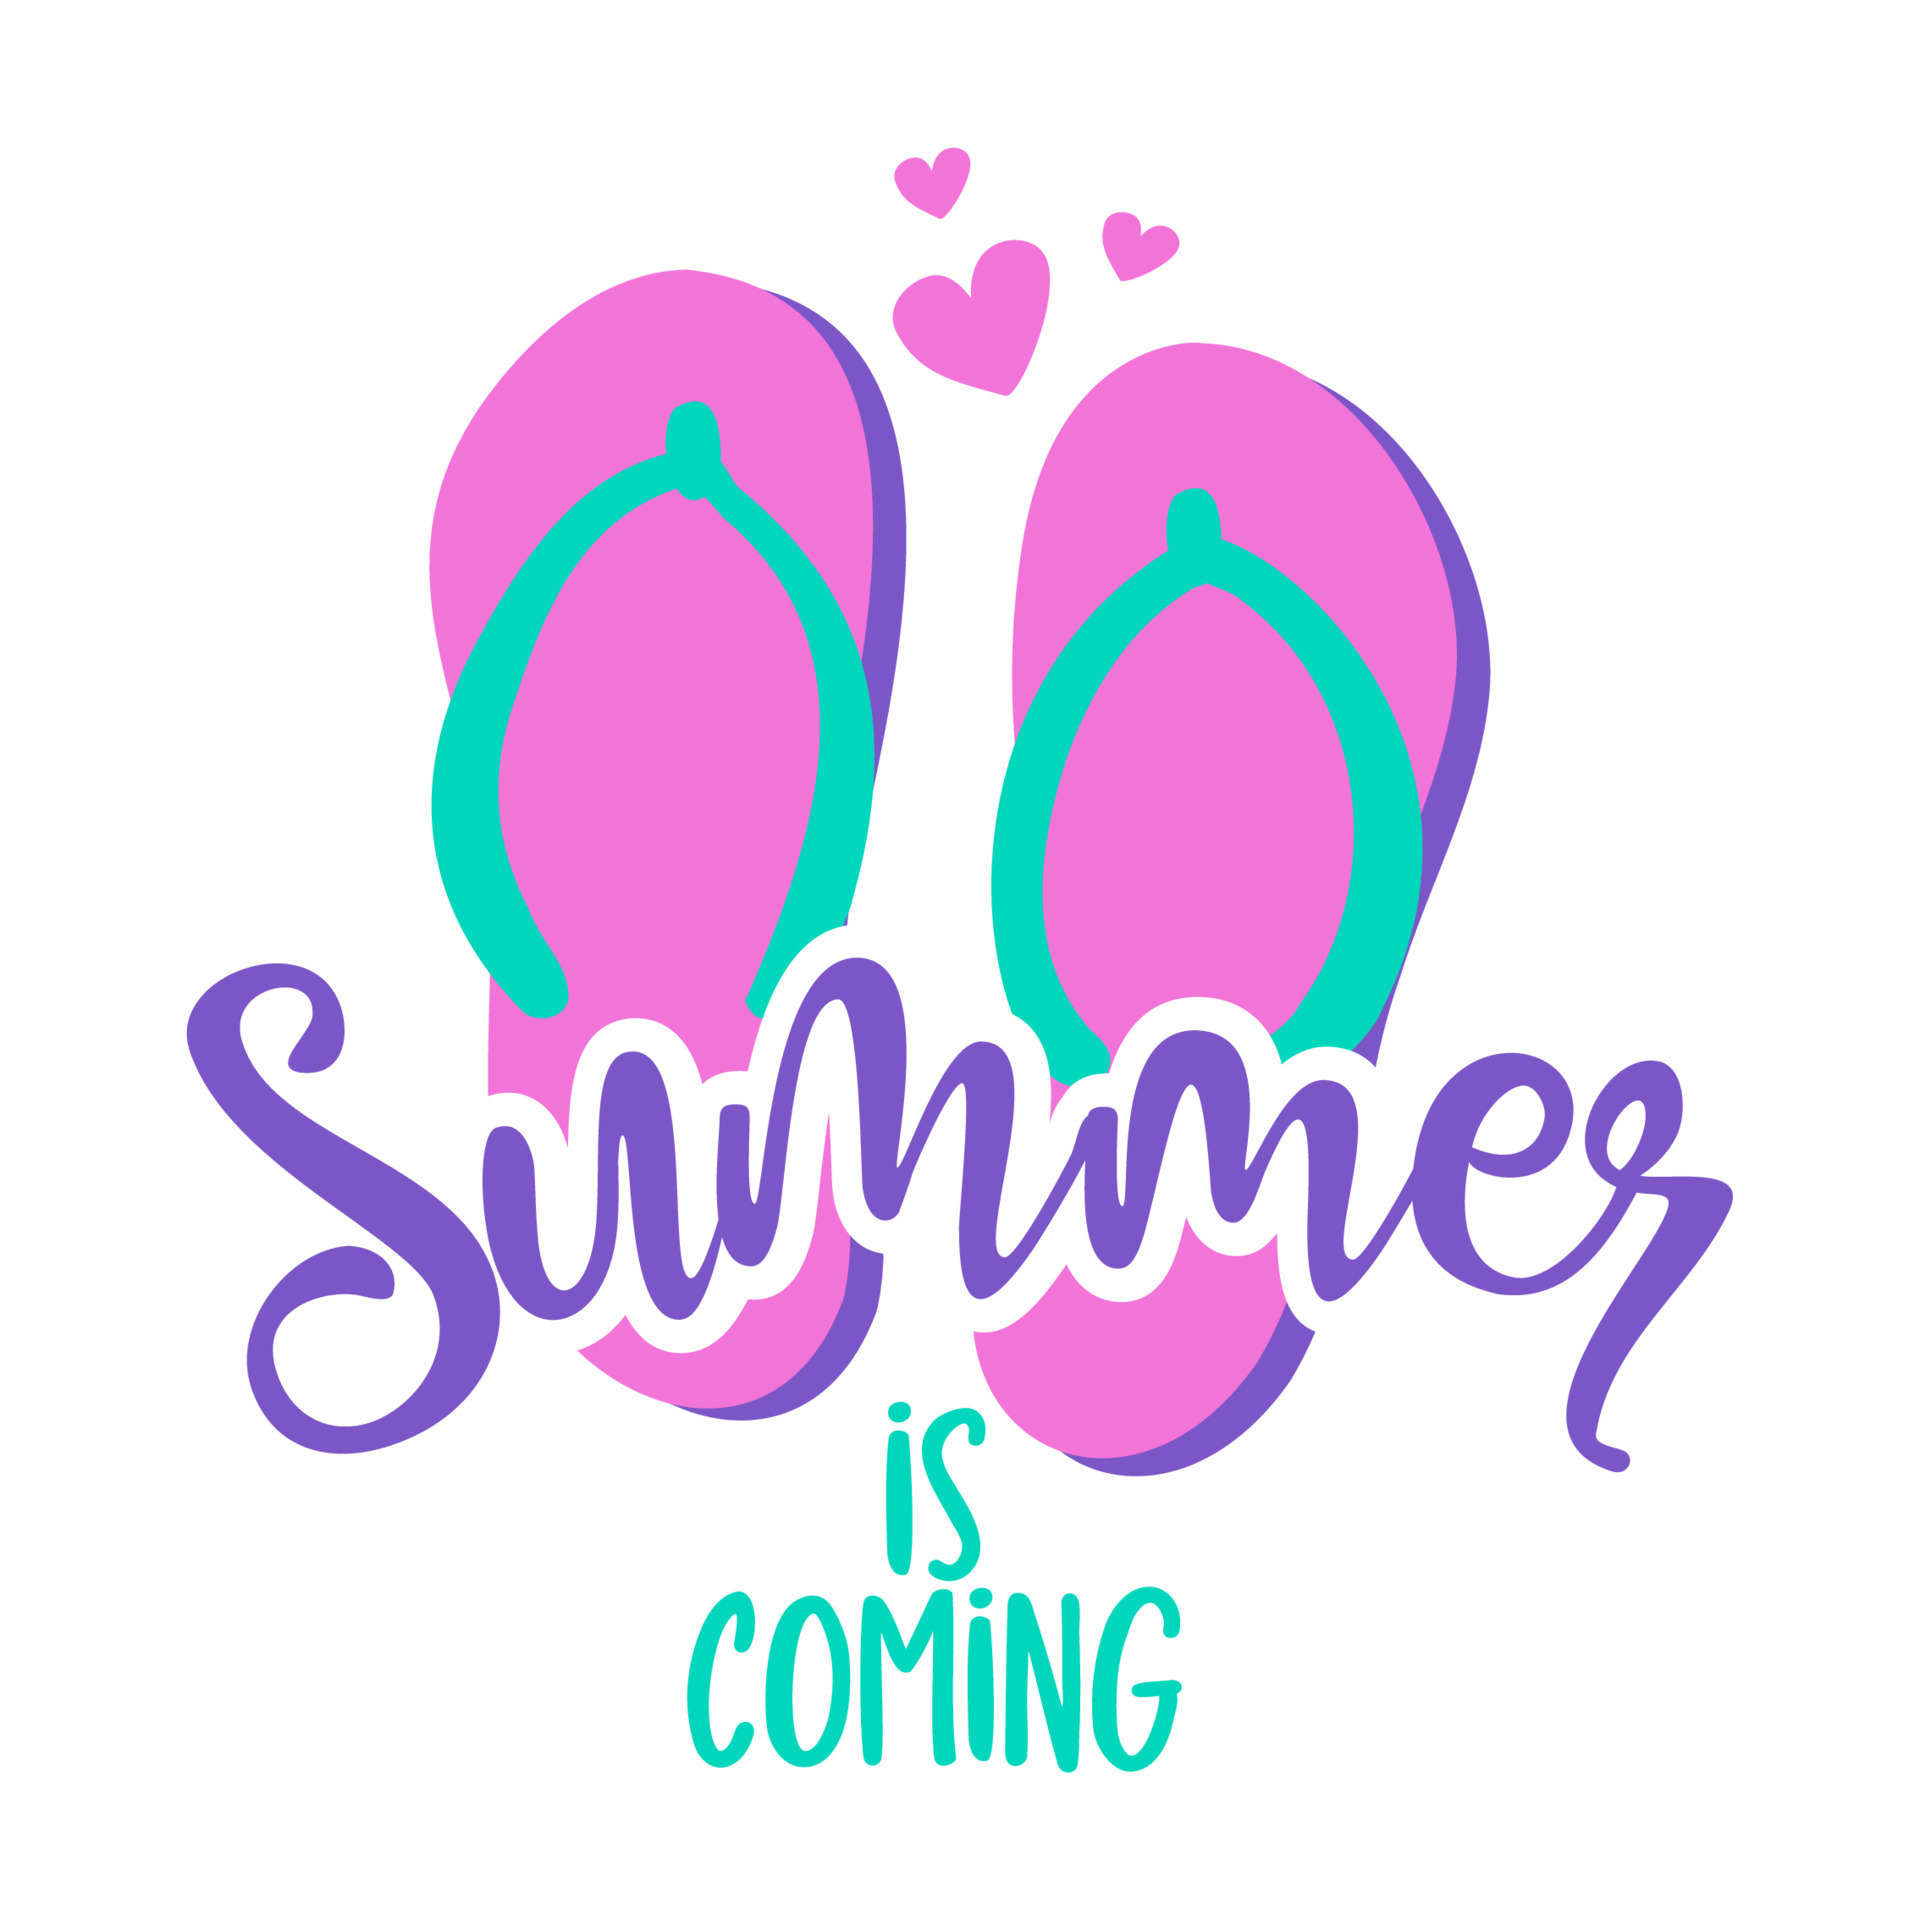 o verão está chegando - chinelos rosa calçados de praia com linda citação  de verão. chinelos desenhados à mão bonitos. divertidos rabiscos felizes  para publicidade, camisetas. 8235762 Vetor no Vecteezy